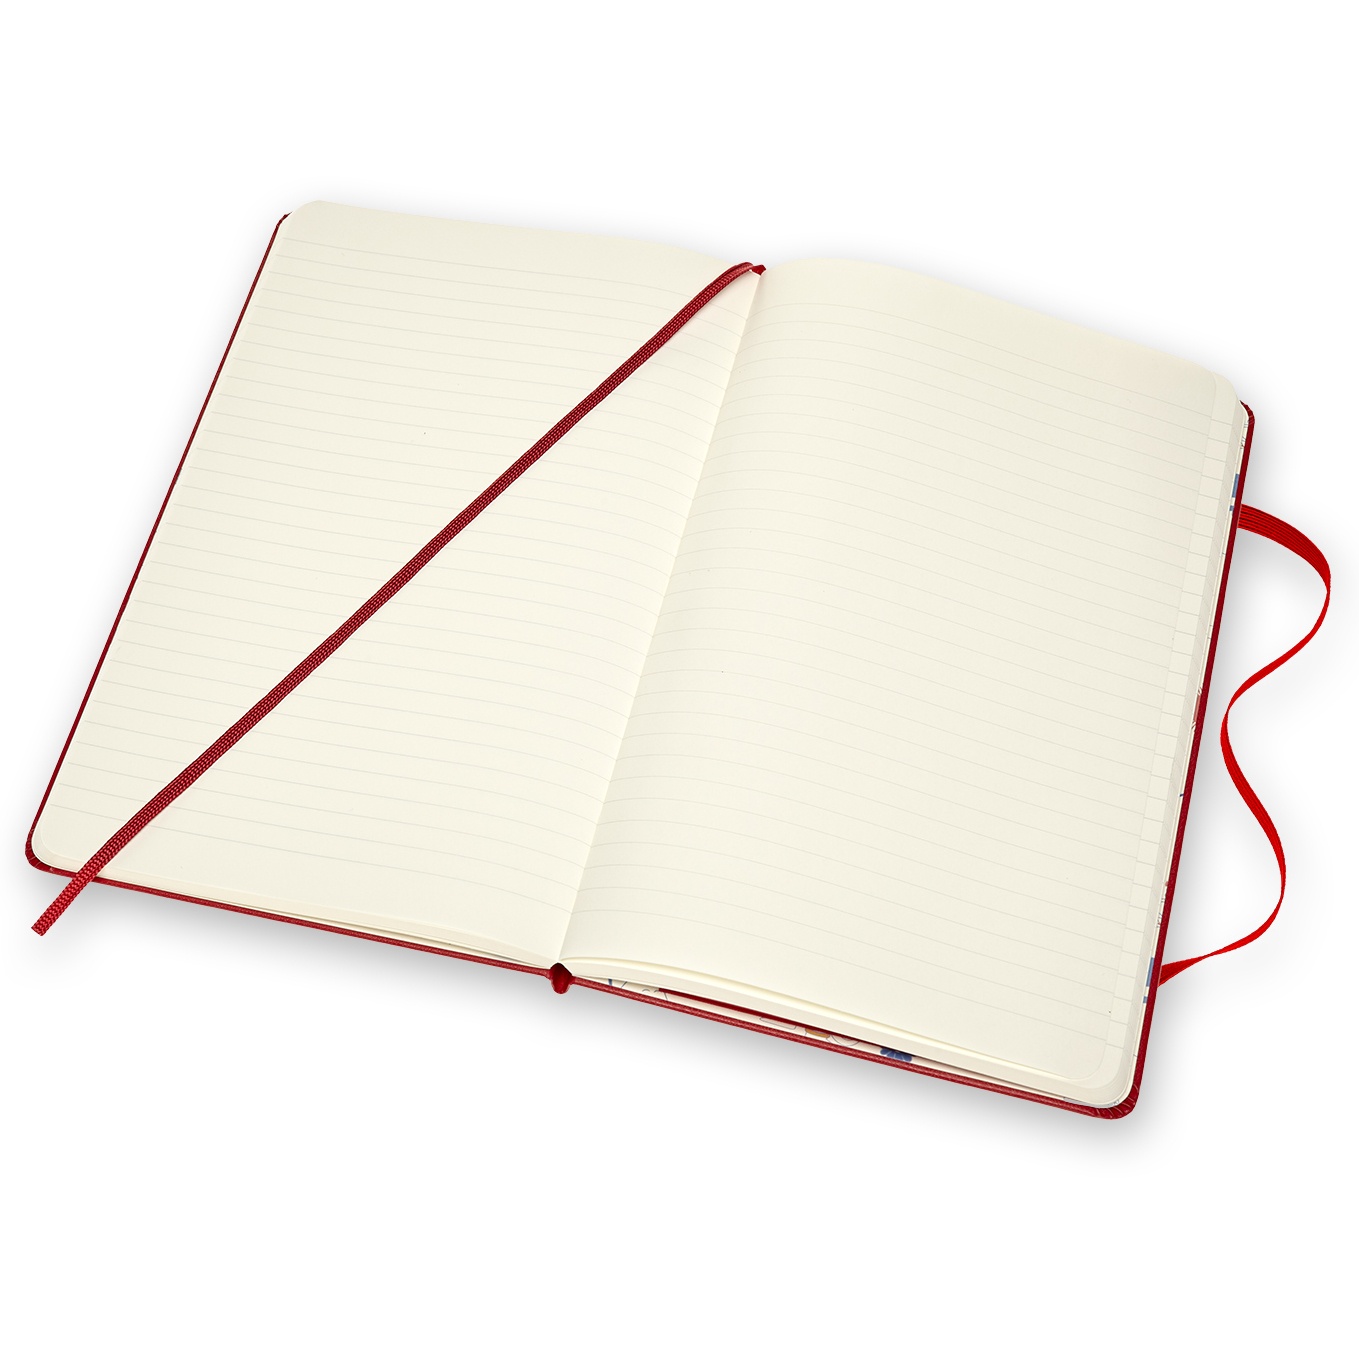 Hardcover Large Moomin Red Ruled dans le groupe Papiers & Blocs / Écrire et consigner / Carnets chez Pen Store (100372)